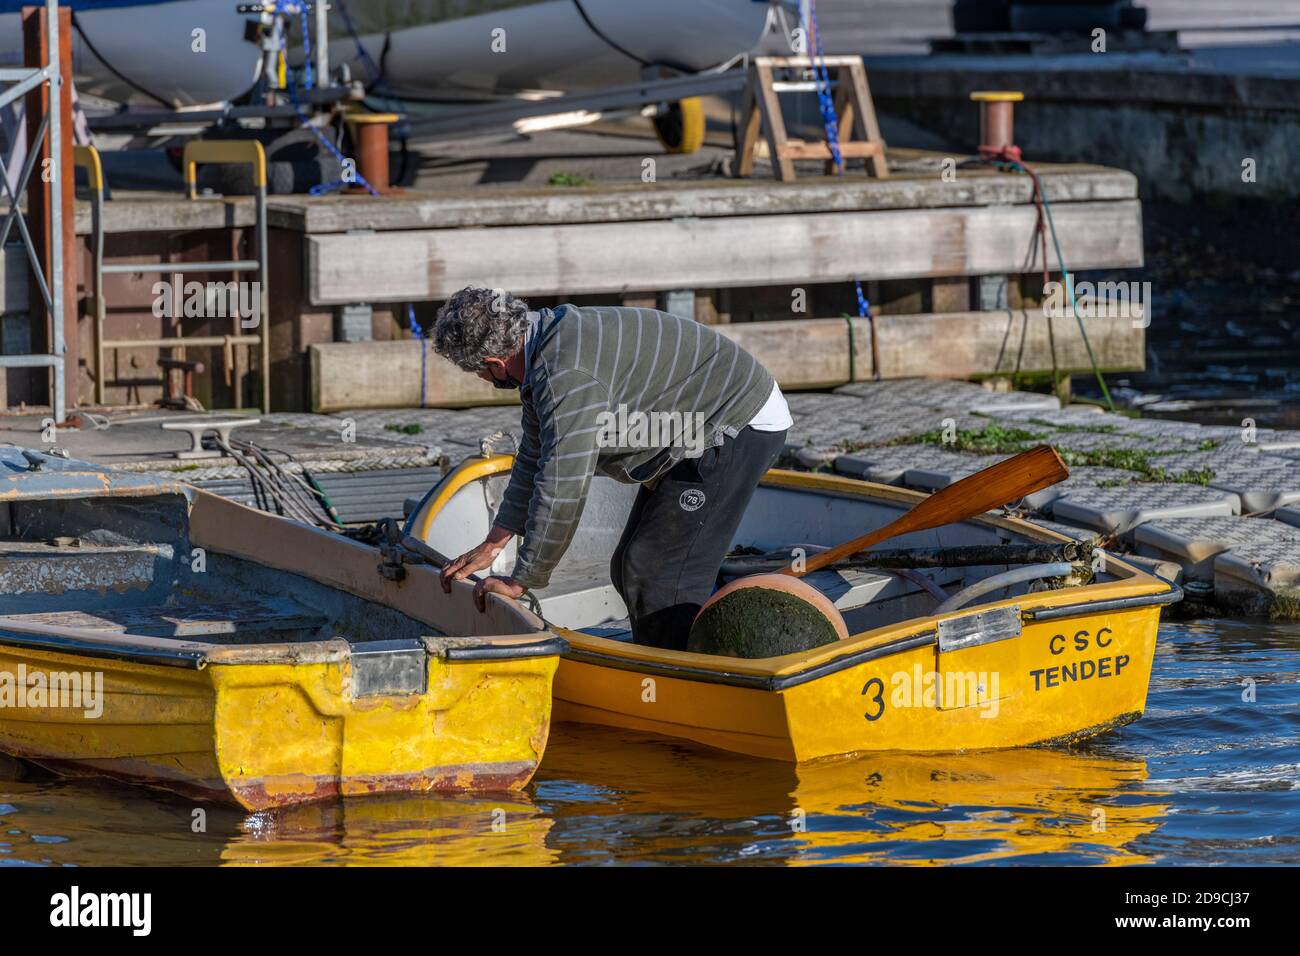 un uomo che sale da una piccola barca gialla a remi dopo aver ormeggiato accanto ad altre barche in un porticciolo. Foto Stock